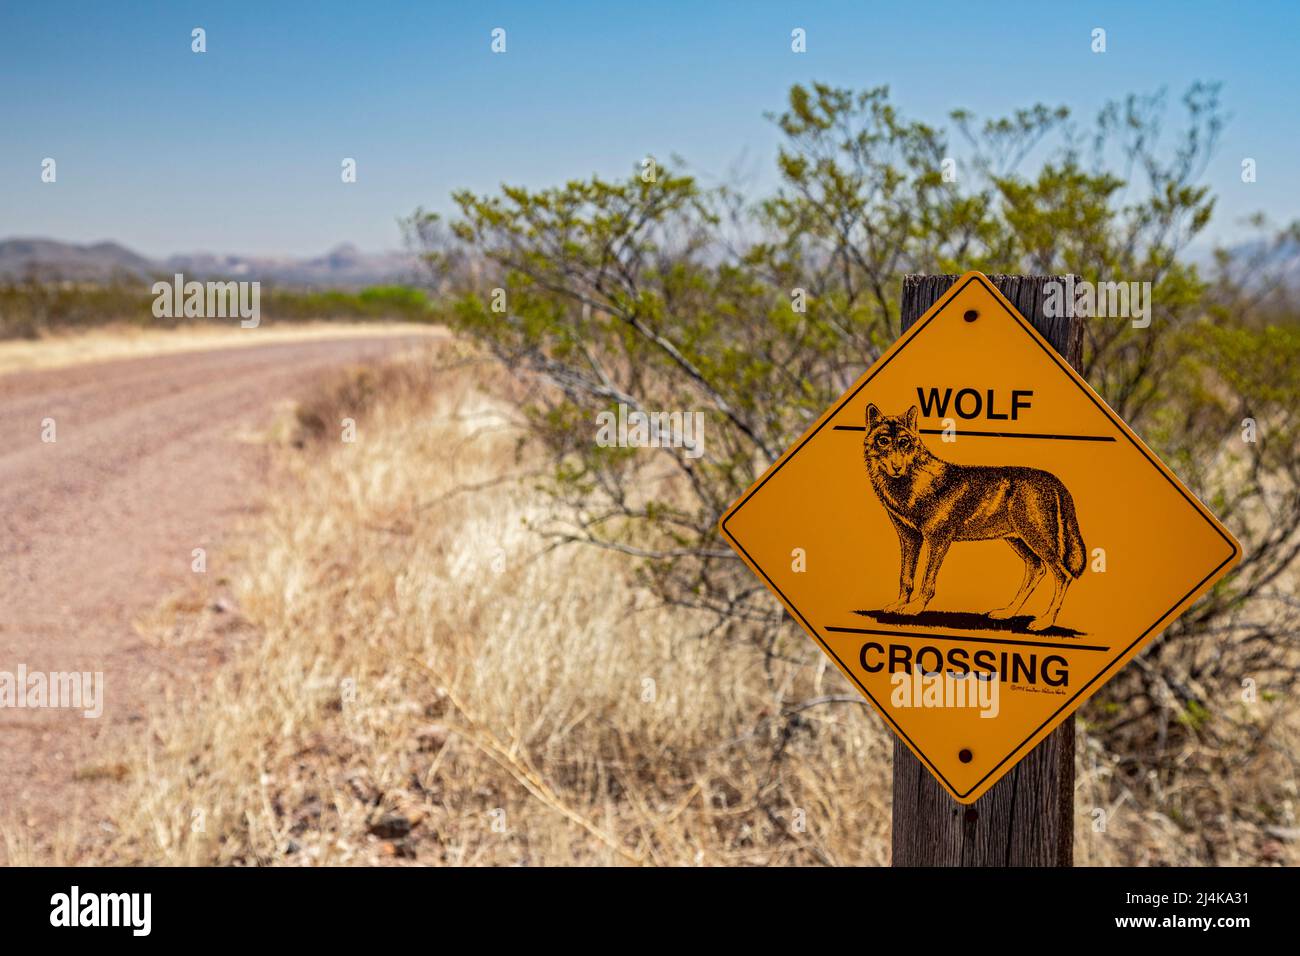 Douglas, Arizona - Un panneau avertit d'un passage de loup sur le sentier Geronimo, une route de terre dans le désert de Chihuahuan près de la frontière entre les États-Unis et le Mexique. Banque D'Images